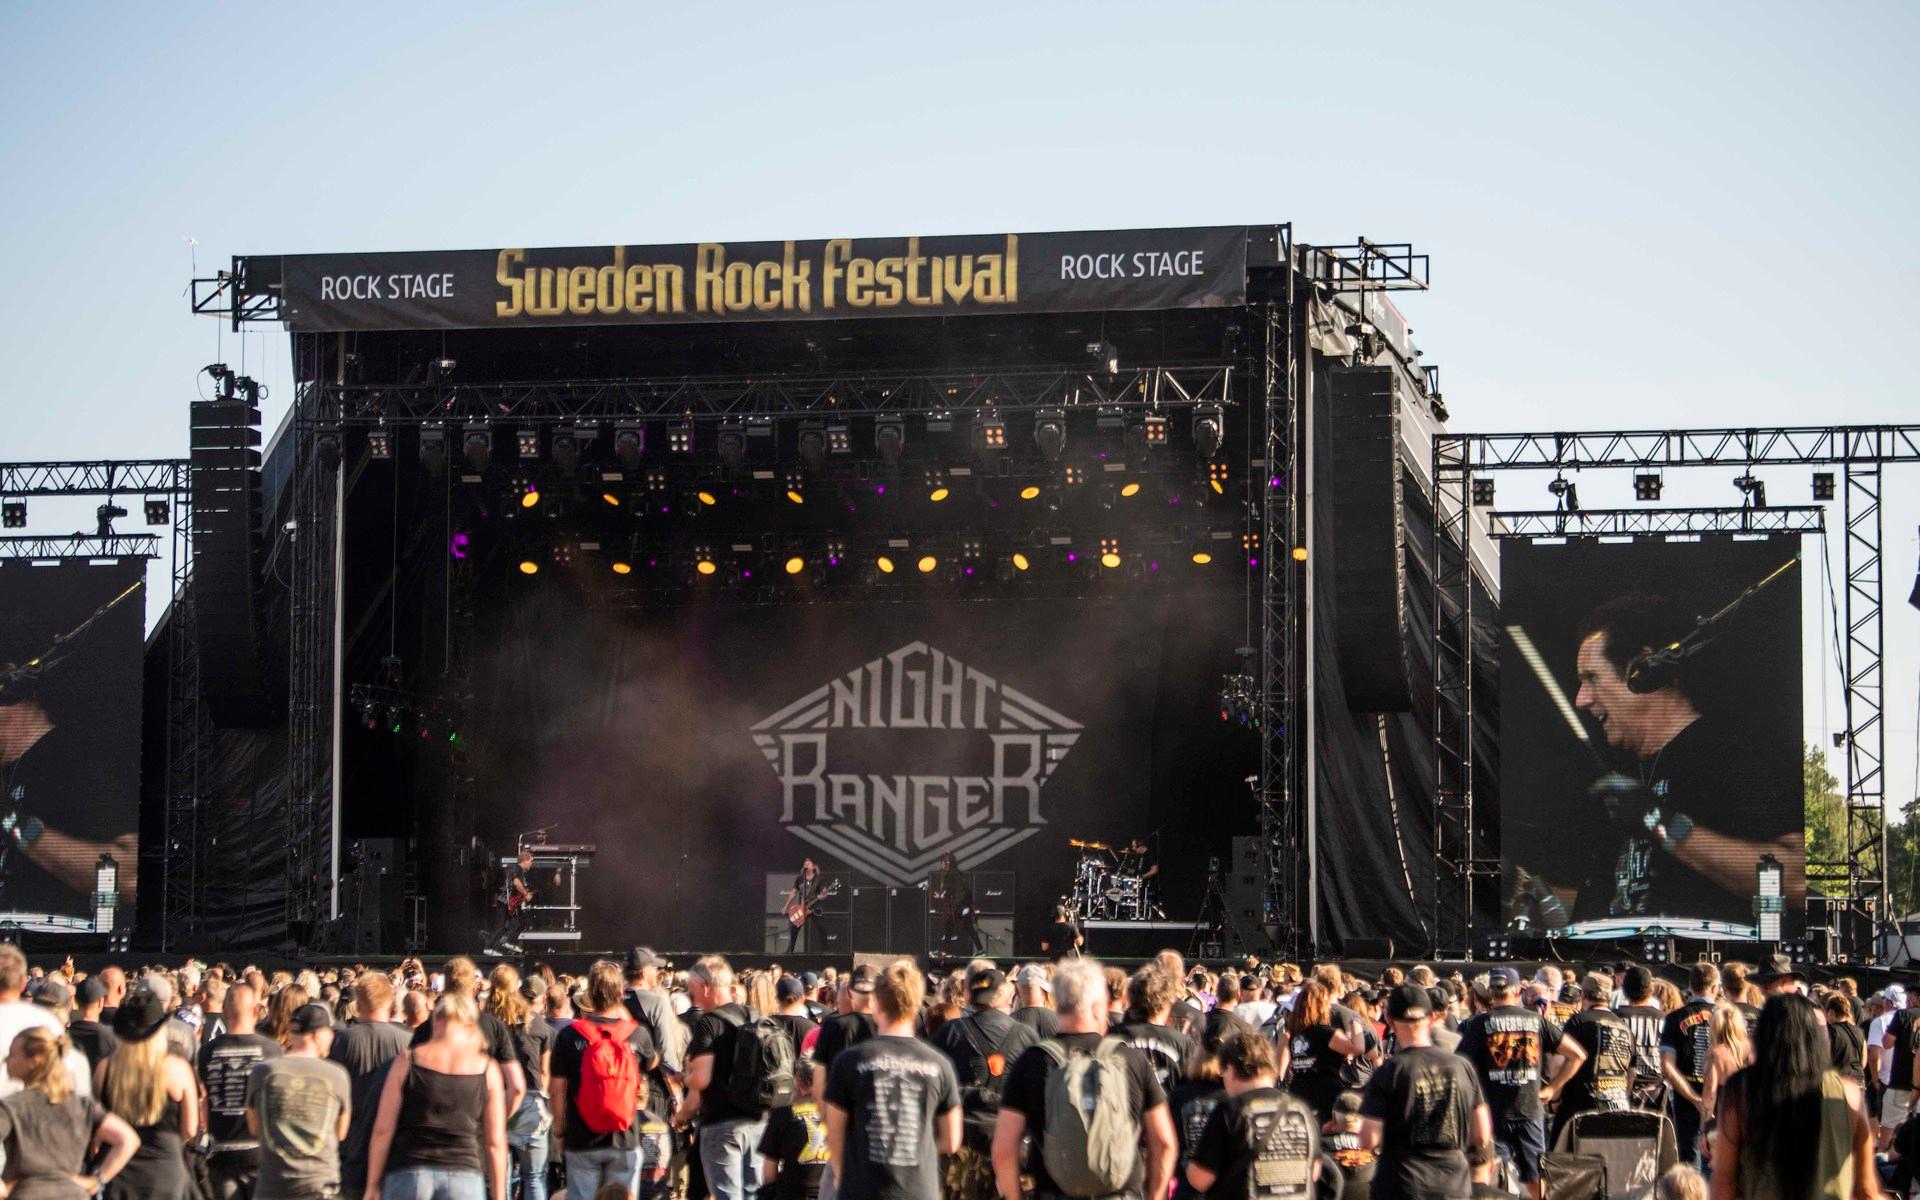 Night Ranger. Sweden Rock Festival 2022.